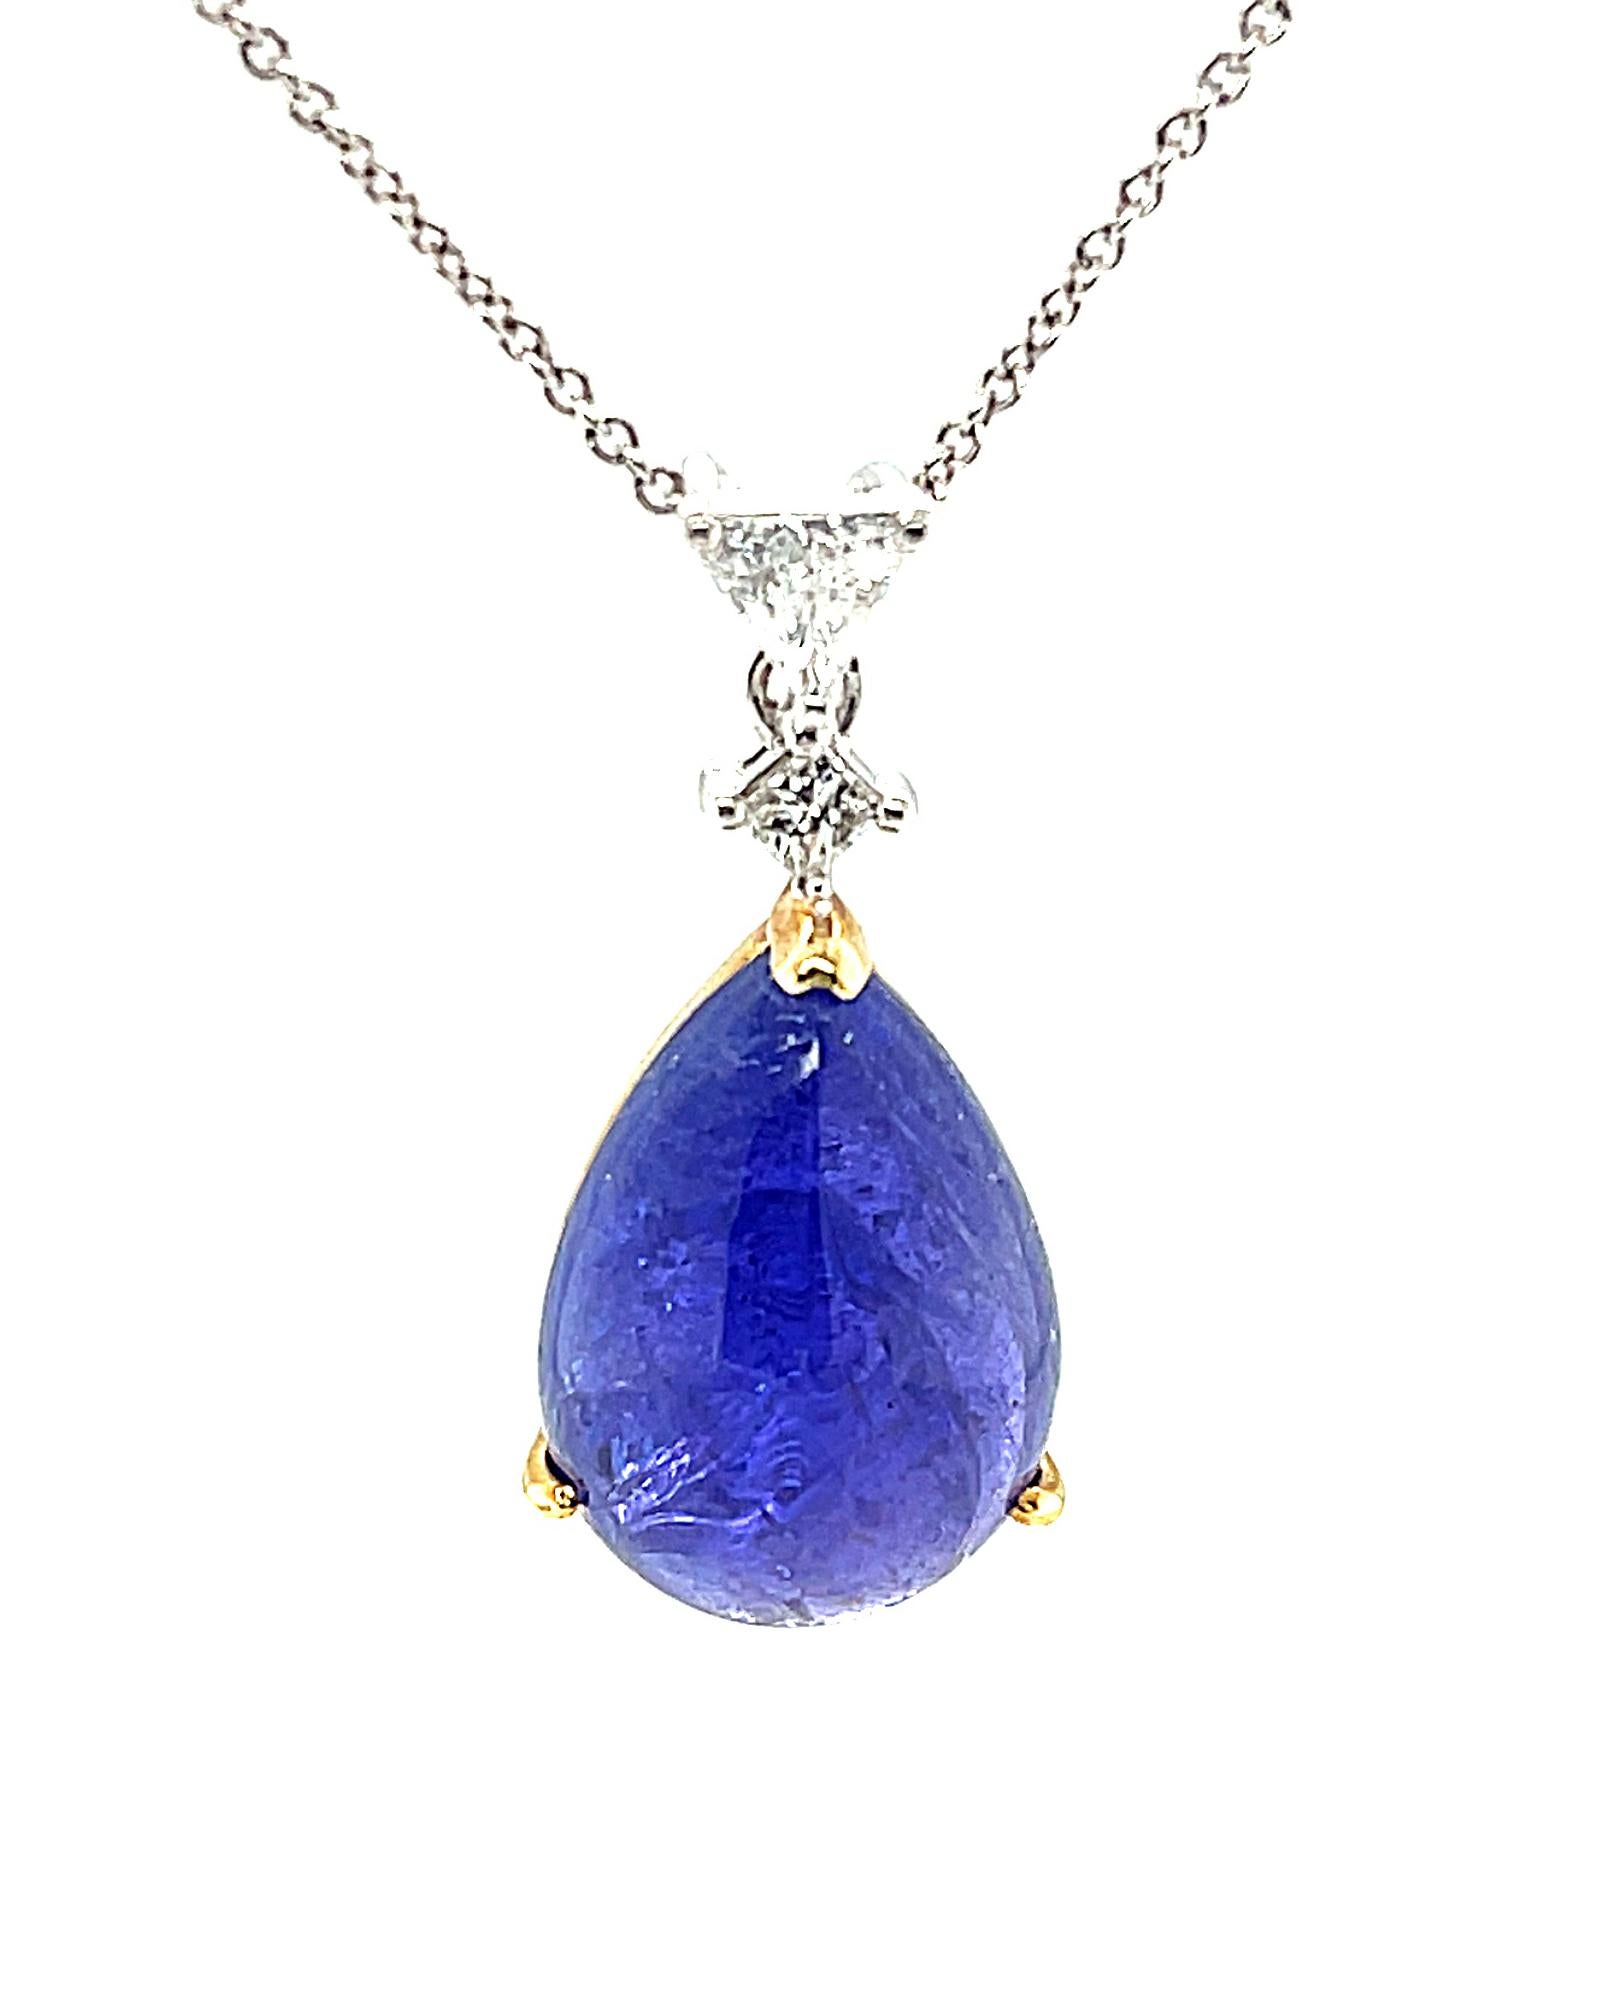 Ce pendentif présente un magnifique cabochon de tanzanite de 12,56 carats, d'une riche couleur bleu lavande qui fait la renommée de la tanzanite ! Ce magnifique bijou est suspendu à des diamants étincelants de taille trillion et princesse pour un